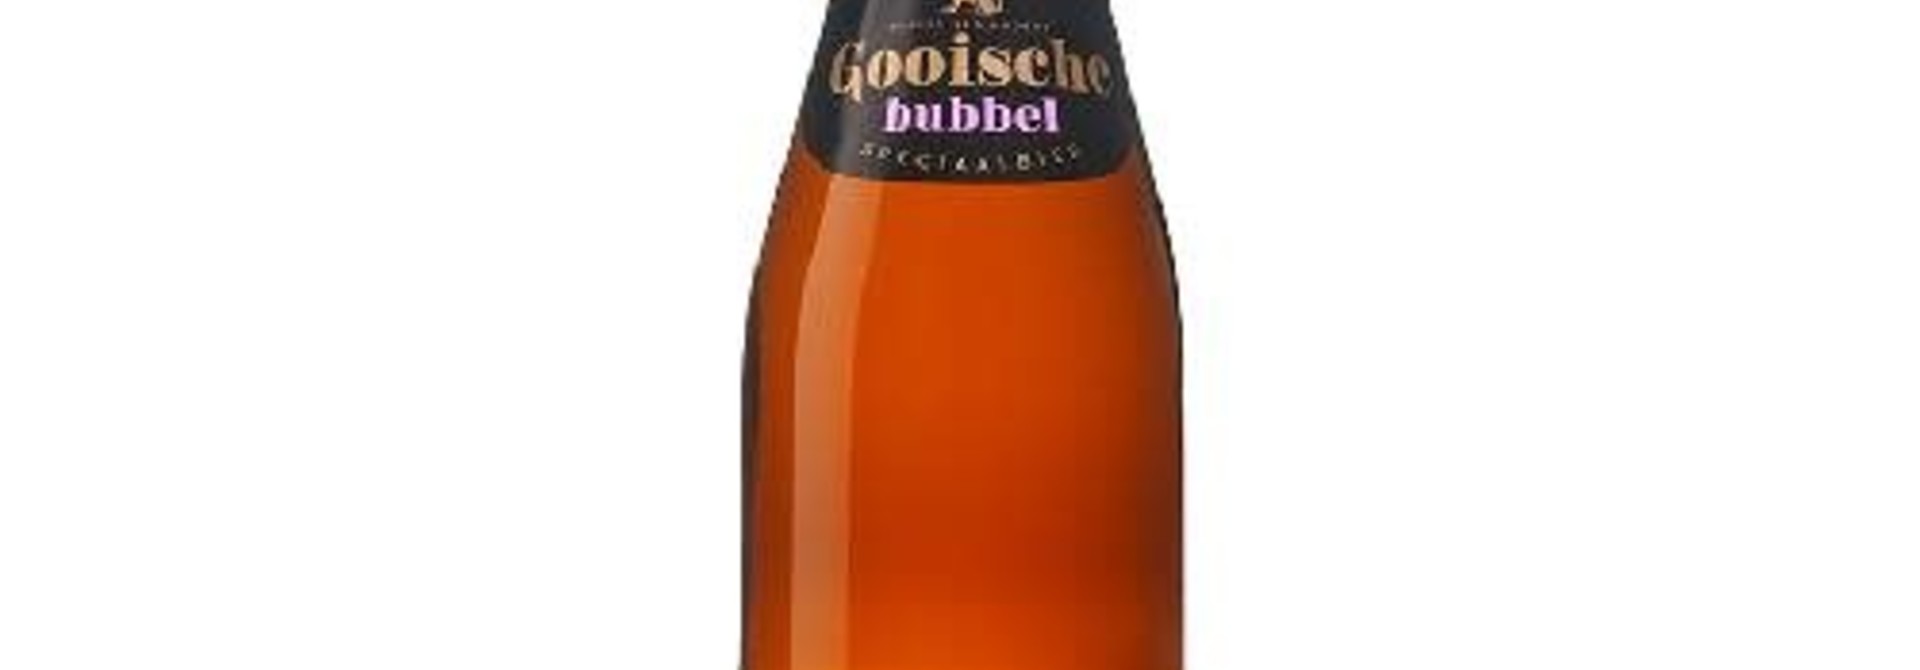 Gooische Bierbrouwerij Gooische Bubbel 33 cl 9%